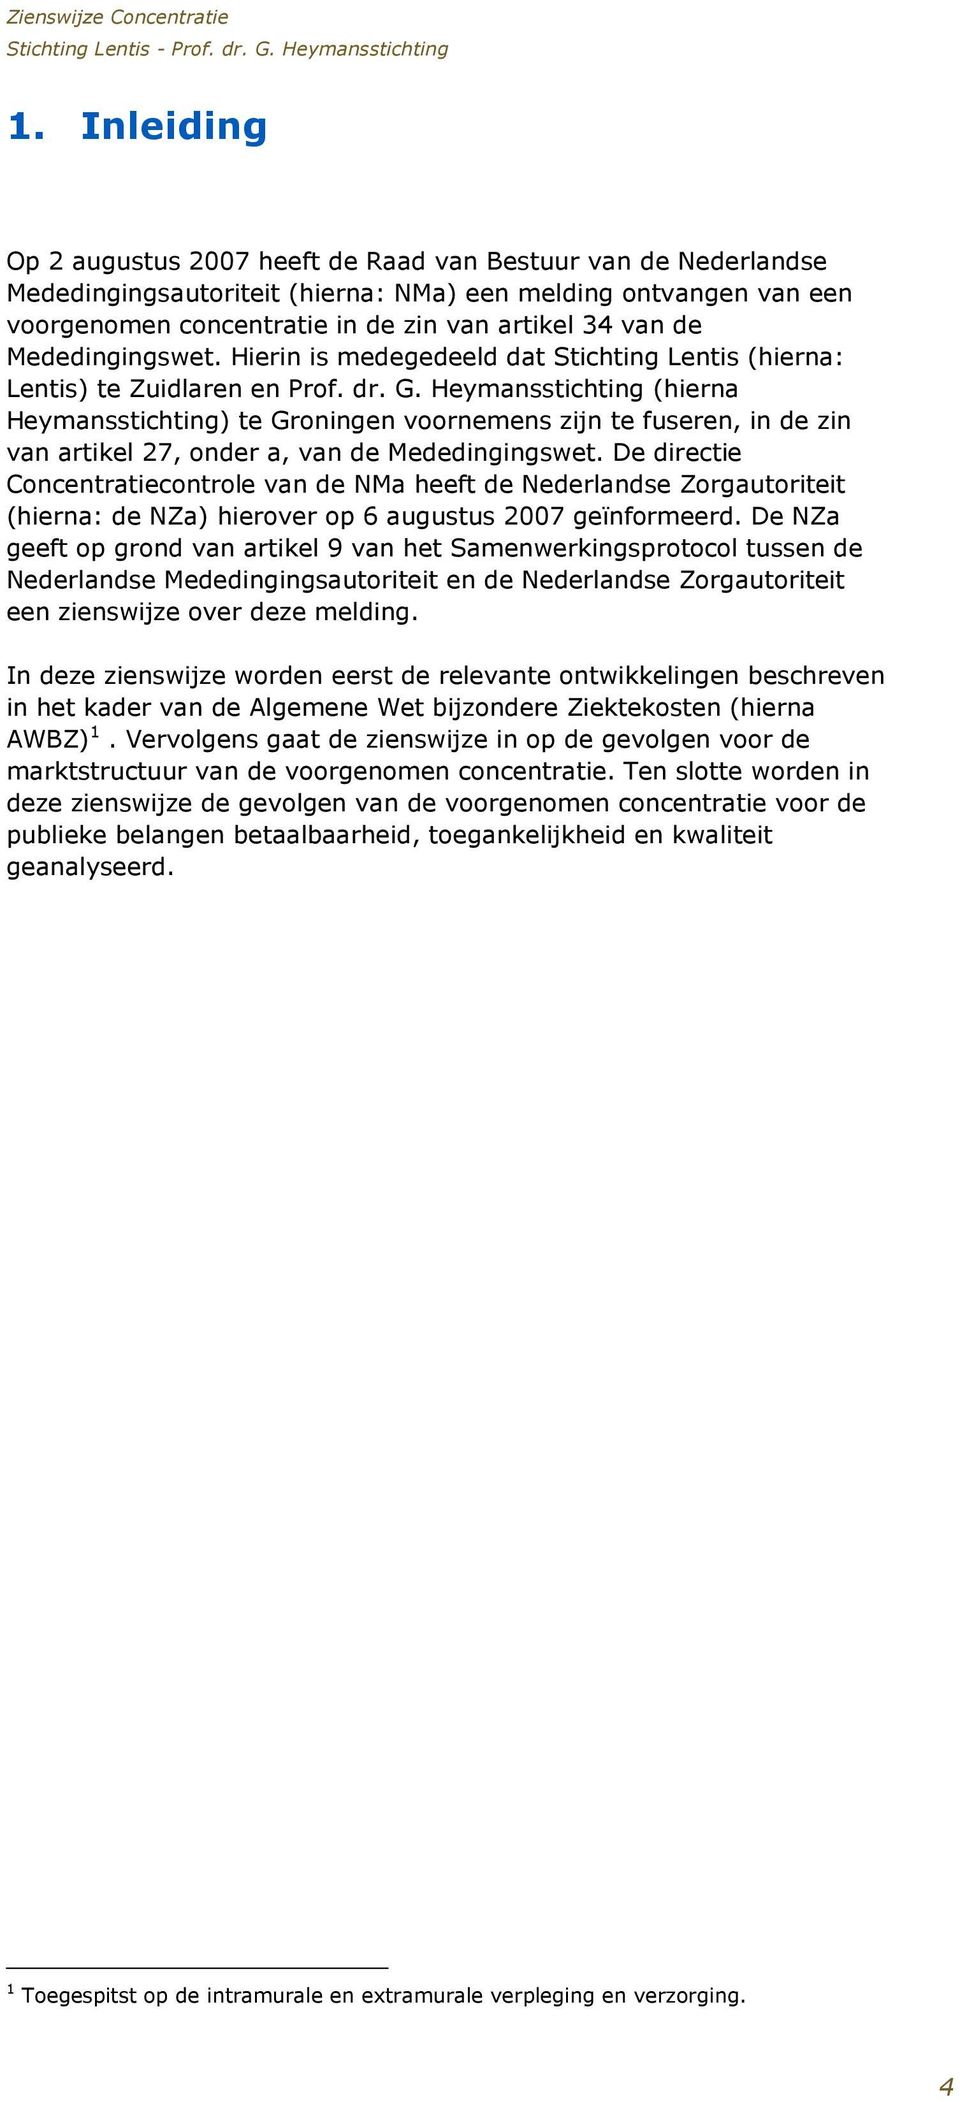 Heymansstichting (hierna Heymansstichting) te Groningen voornemens zijn te fuseren, in de zin van artikel 27, onder a, van de Mededingingswet.